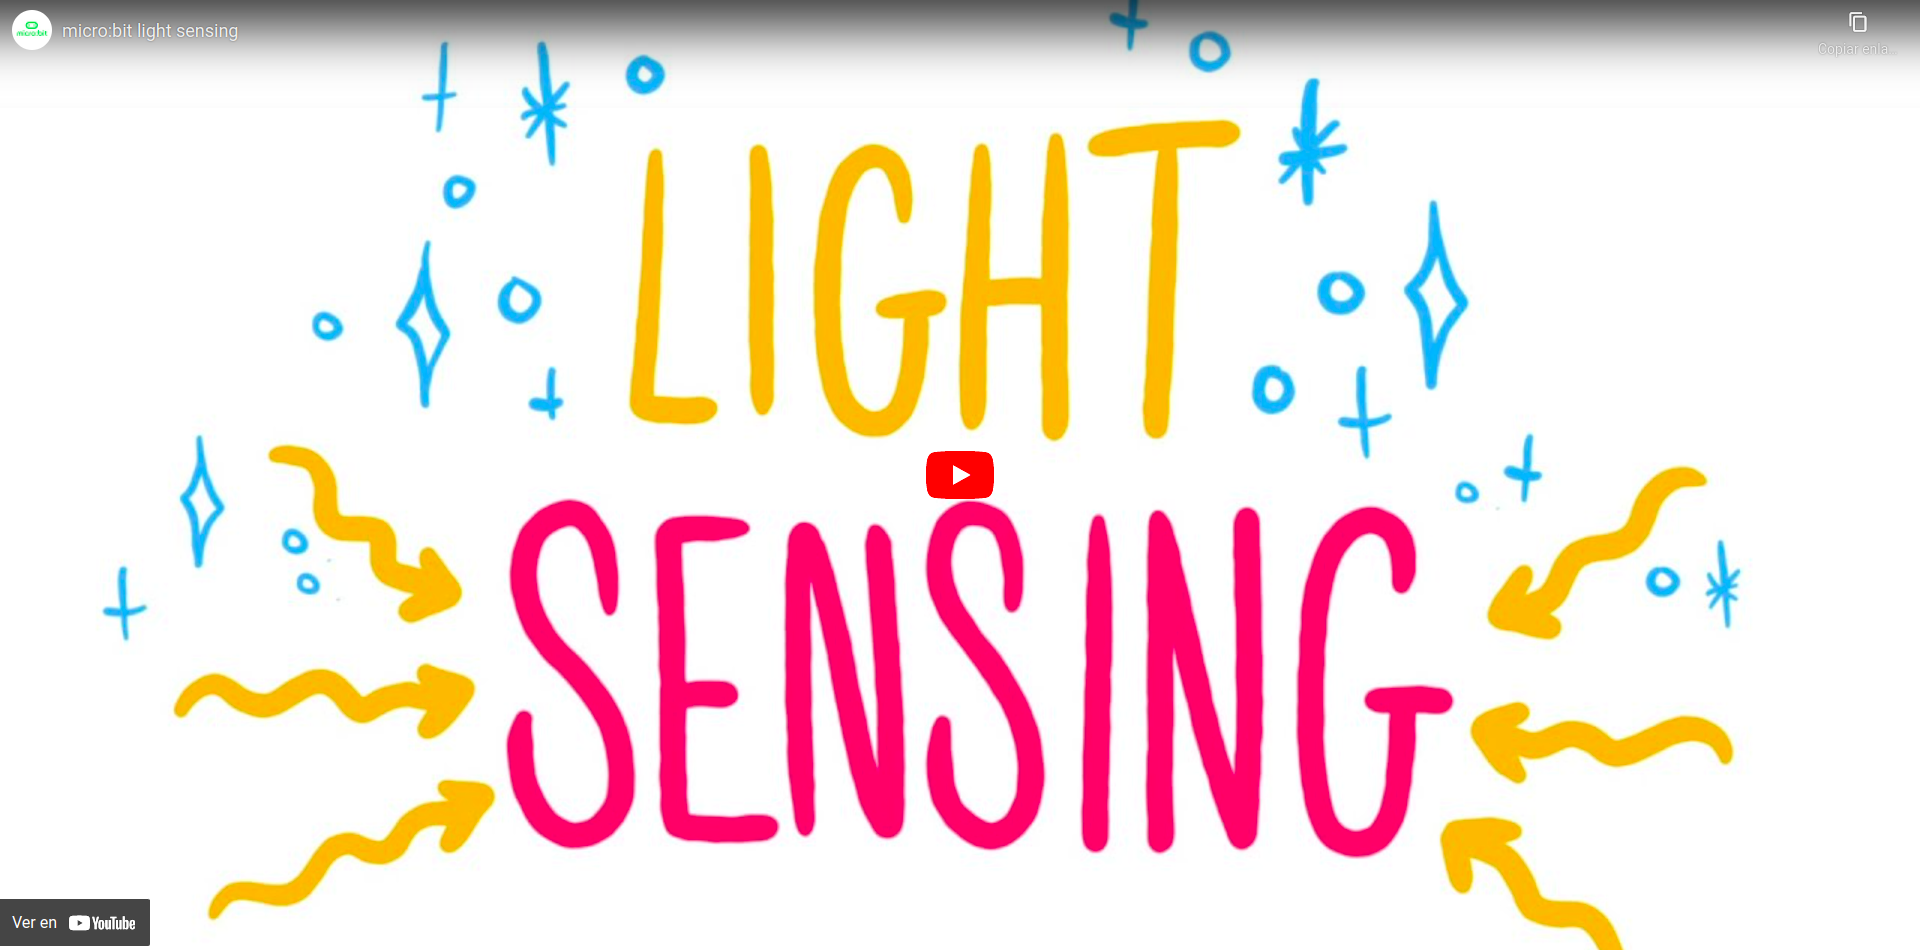 Vídeo que describe el funcionamiento del sensor de luz de la placa micro:bit